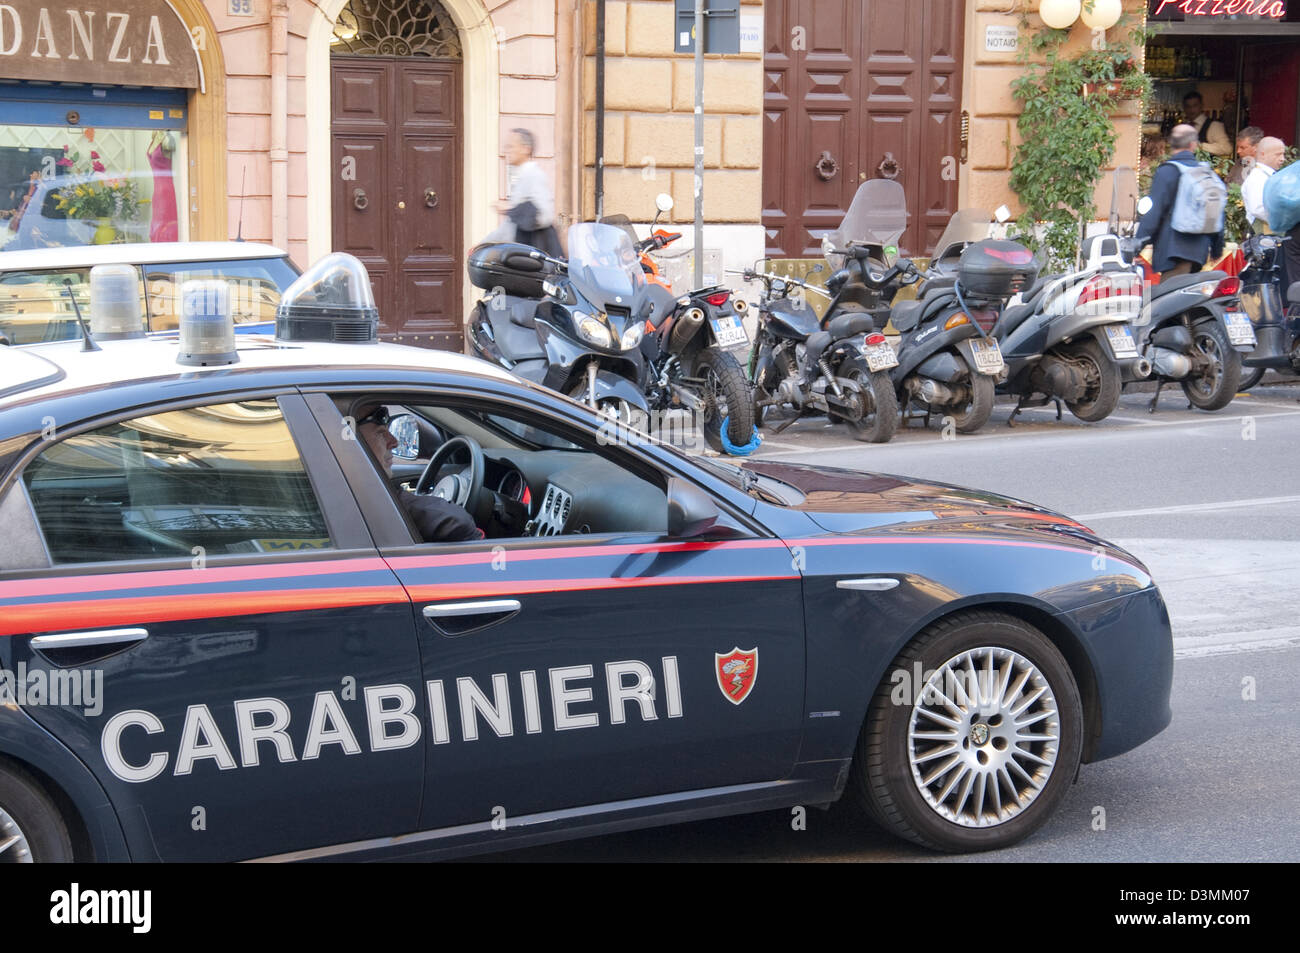 Veicolo dei carabinieri a roma italia Foto Stock